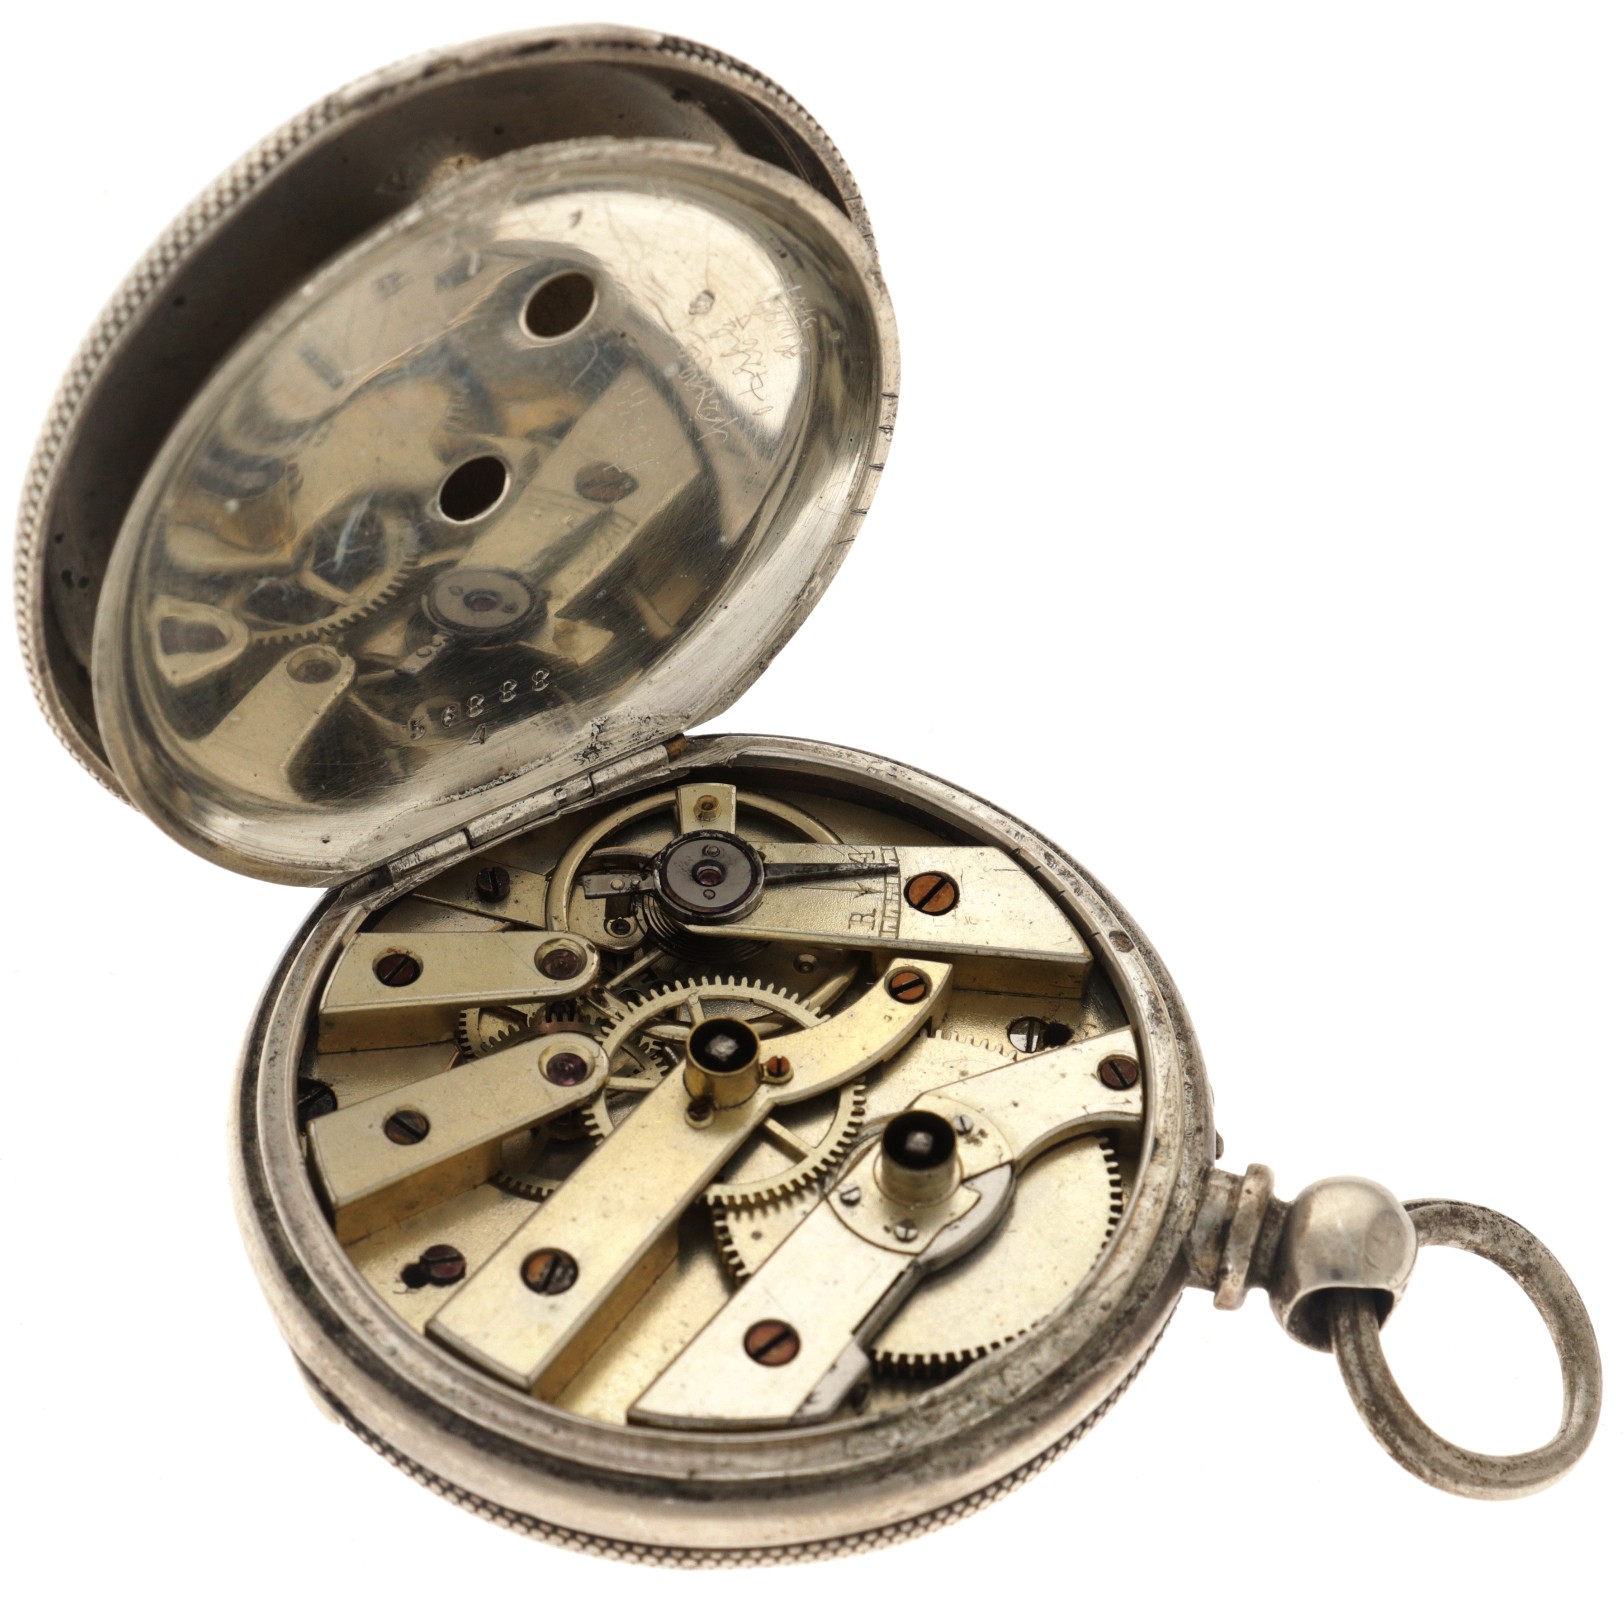 No Reserve - J. Baumer silver (800/1000) - Men's pocket watch - Paris, France. - Image 4 of 5